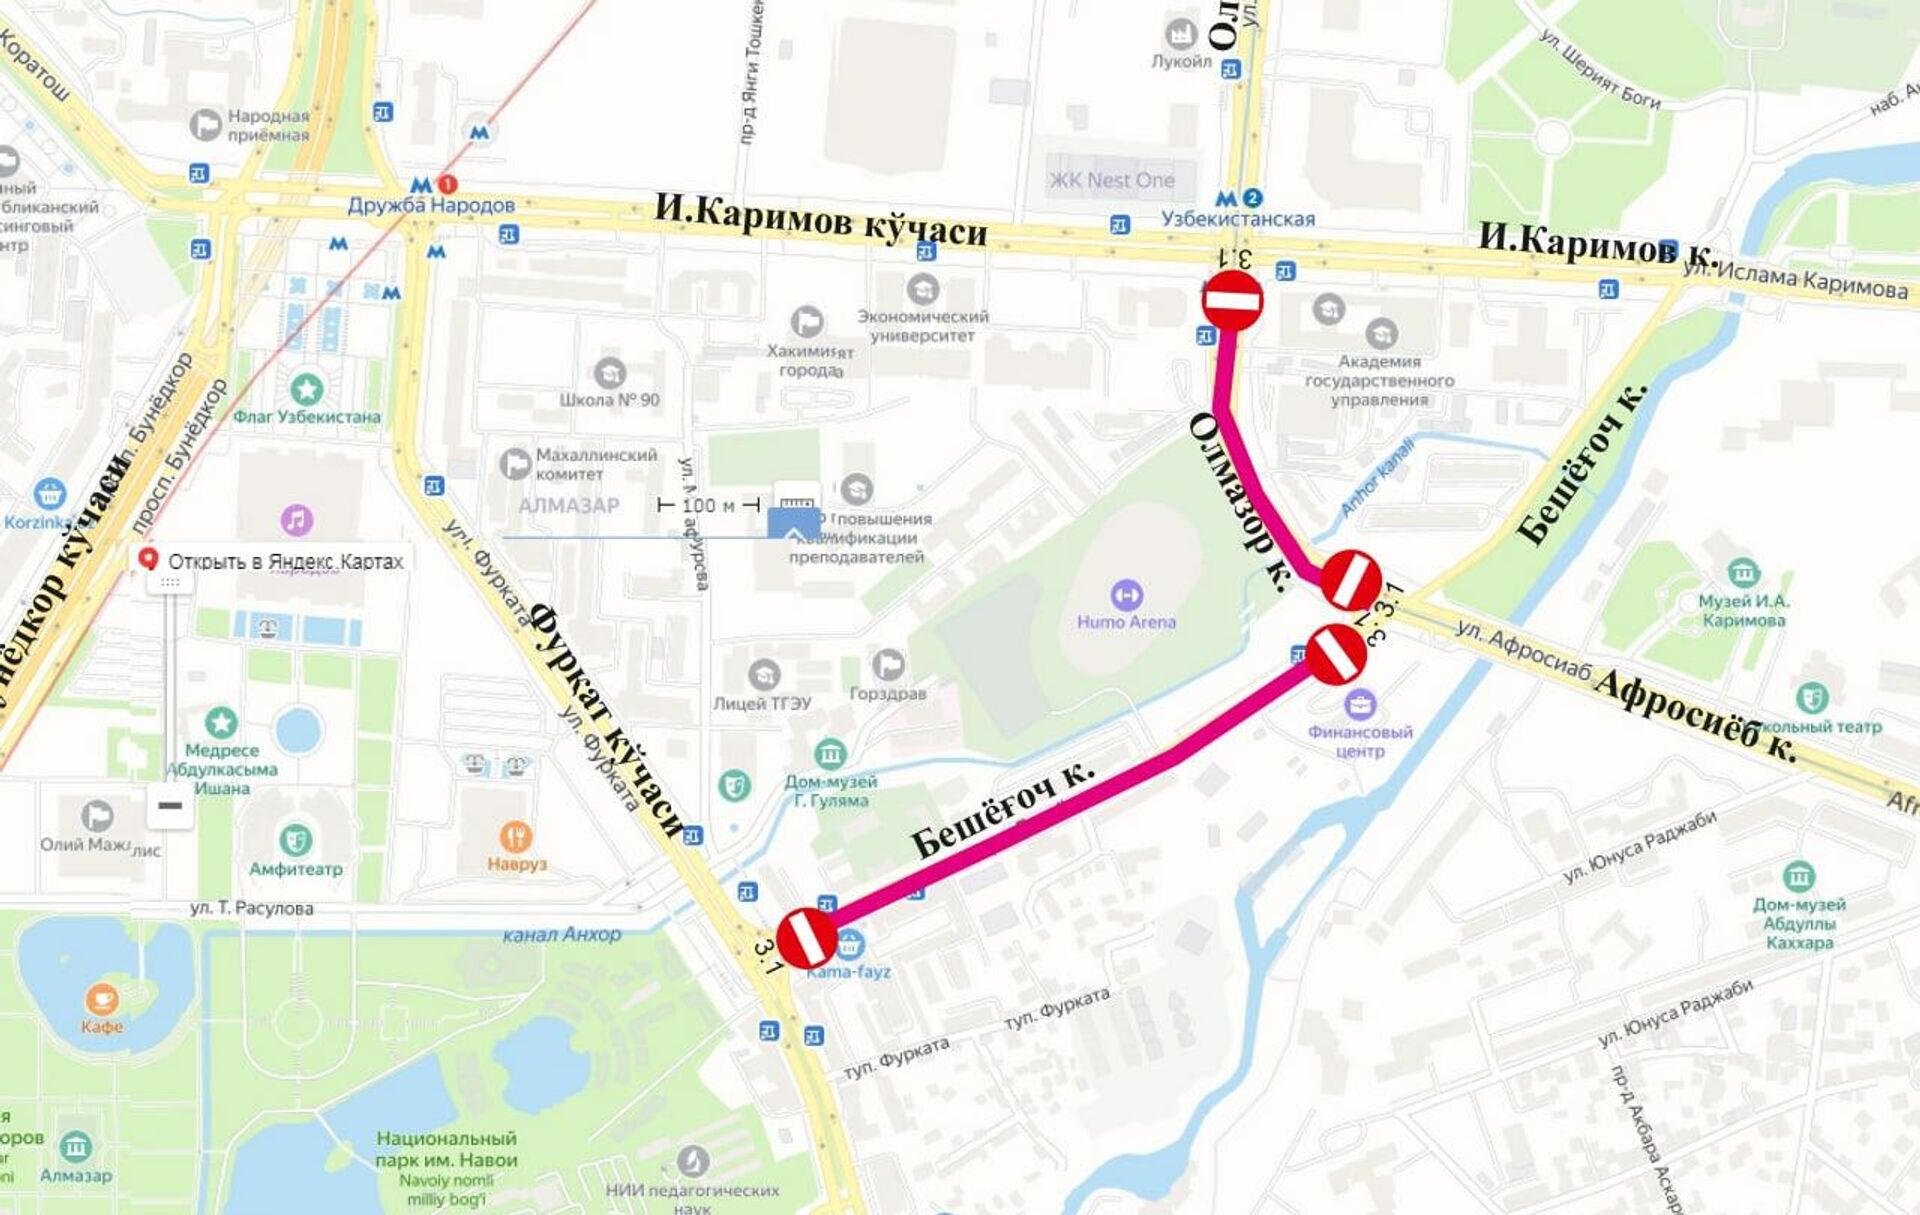 Схема перекрытия улиц в Ташкенте во время празднования Навруза - Sputnik Ўзбекистон, 1920, 20.03.2022